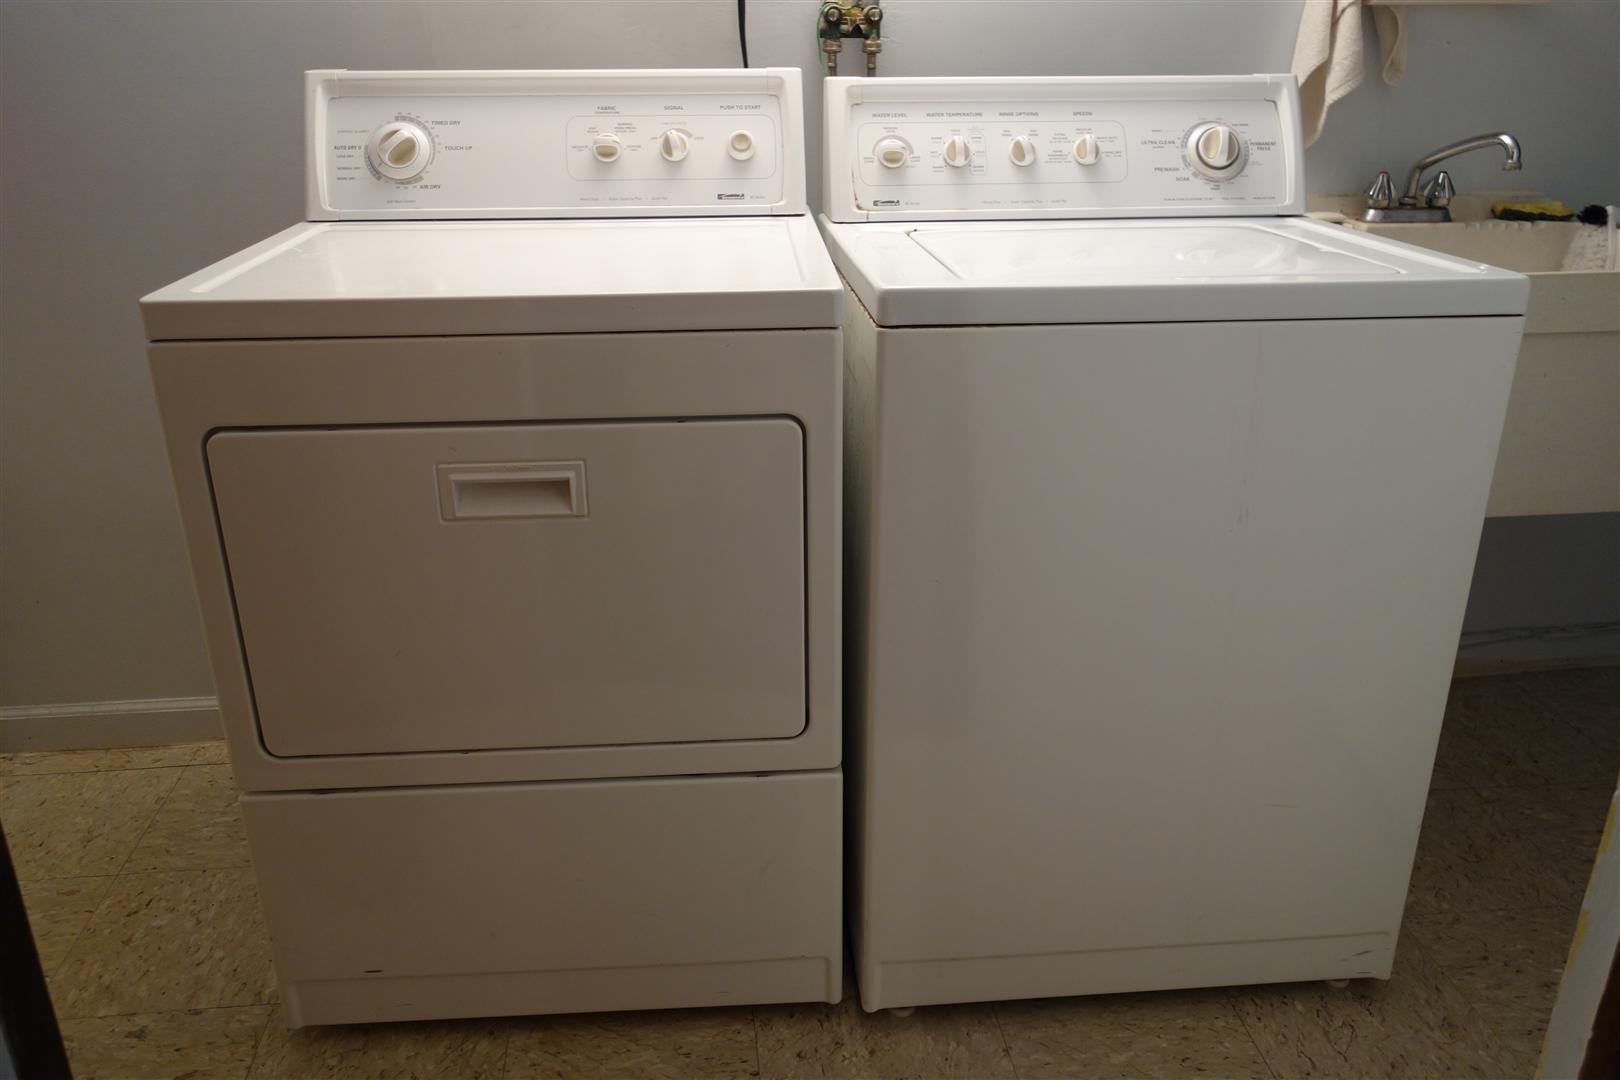 Washing machine kenmore 80 series manual